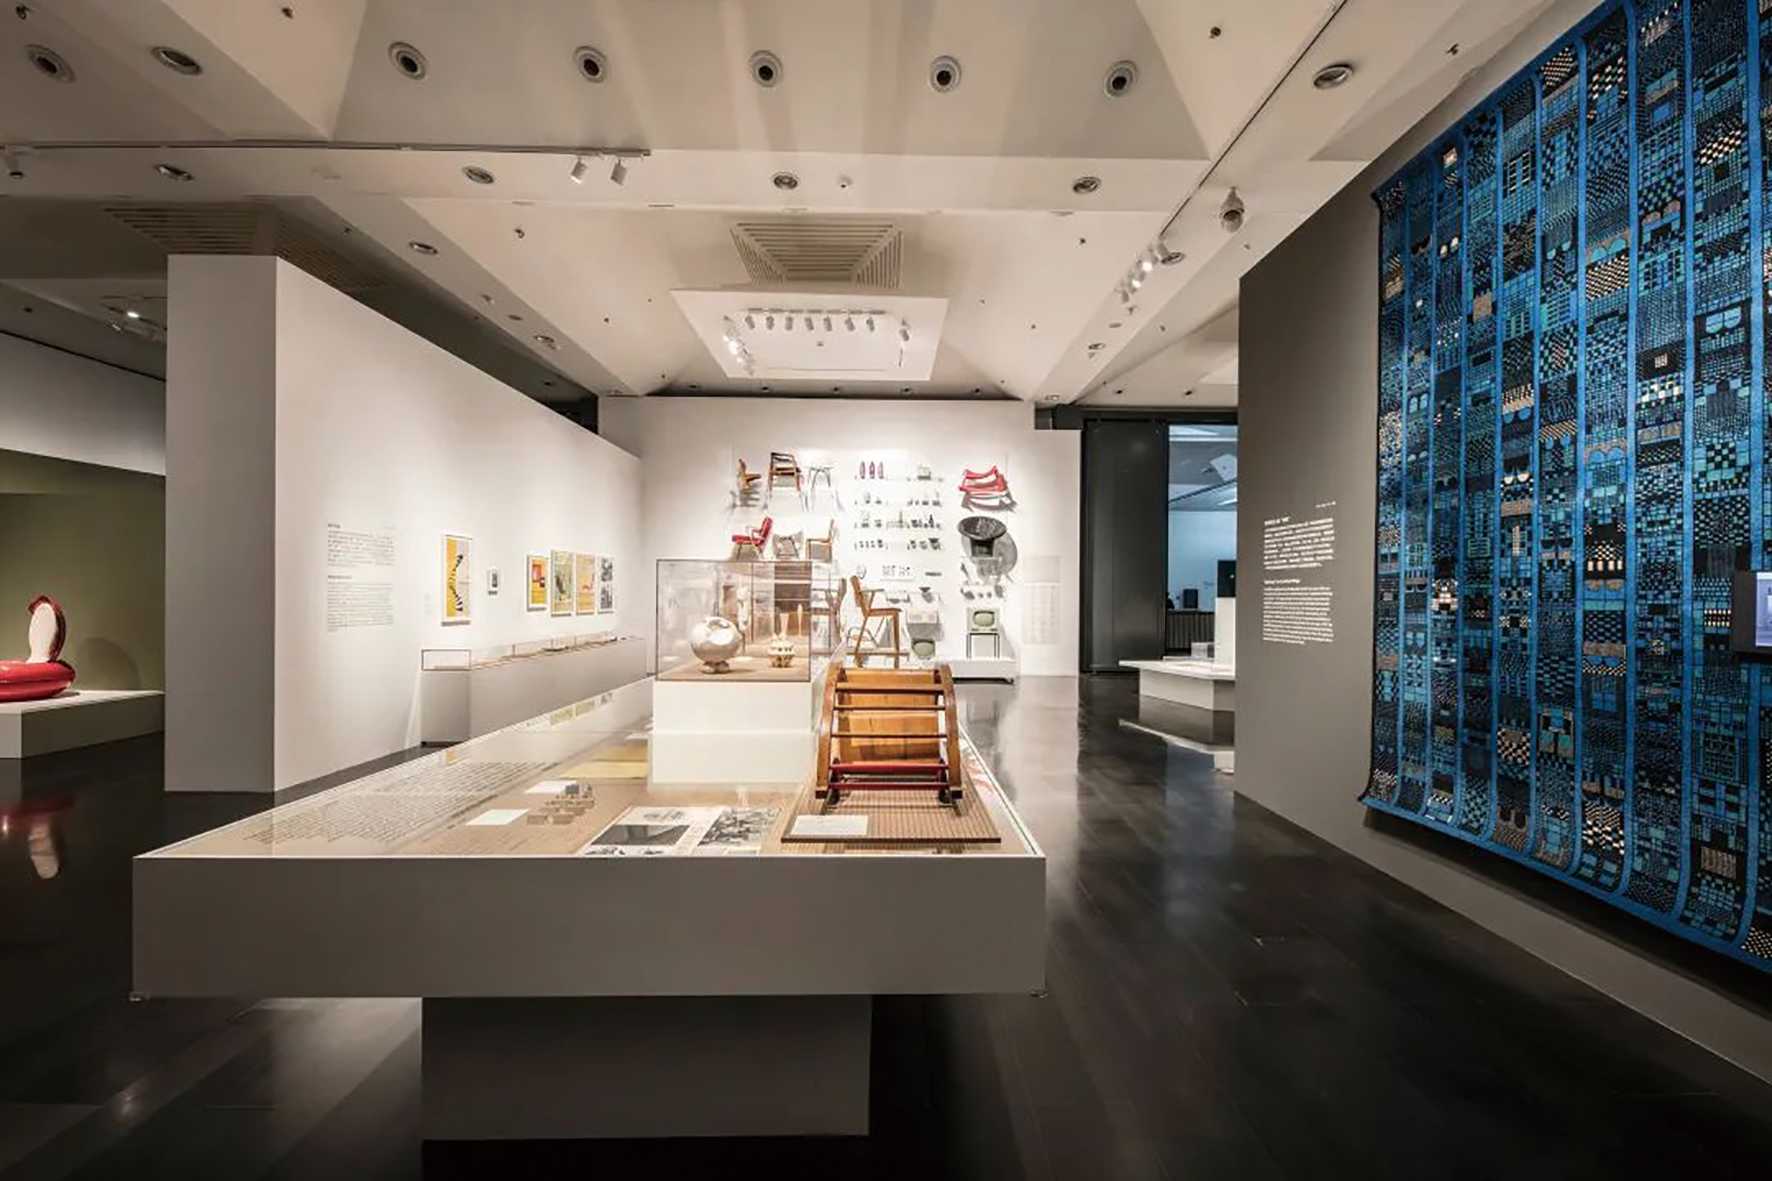 近日在清华艺术博物馆展出的“交织的轨迹：德国现代设计1945—1990”展览现场